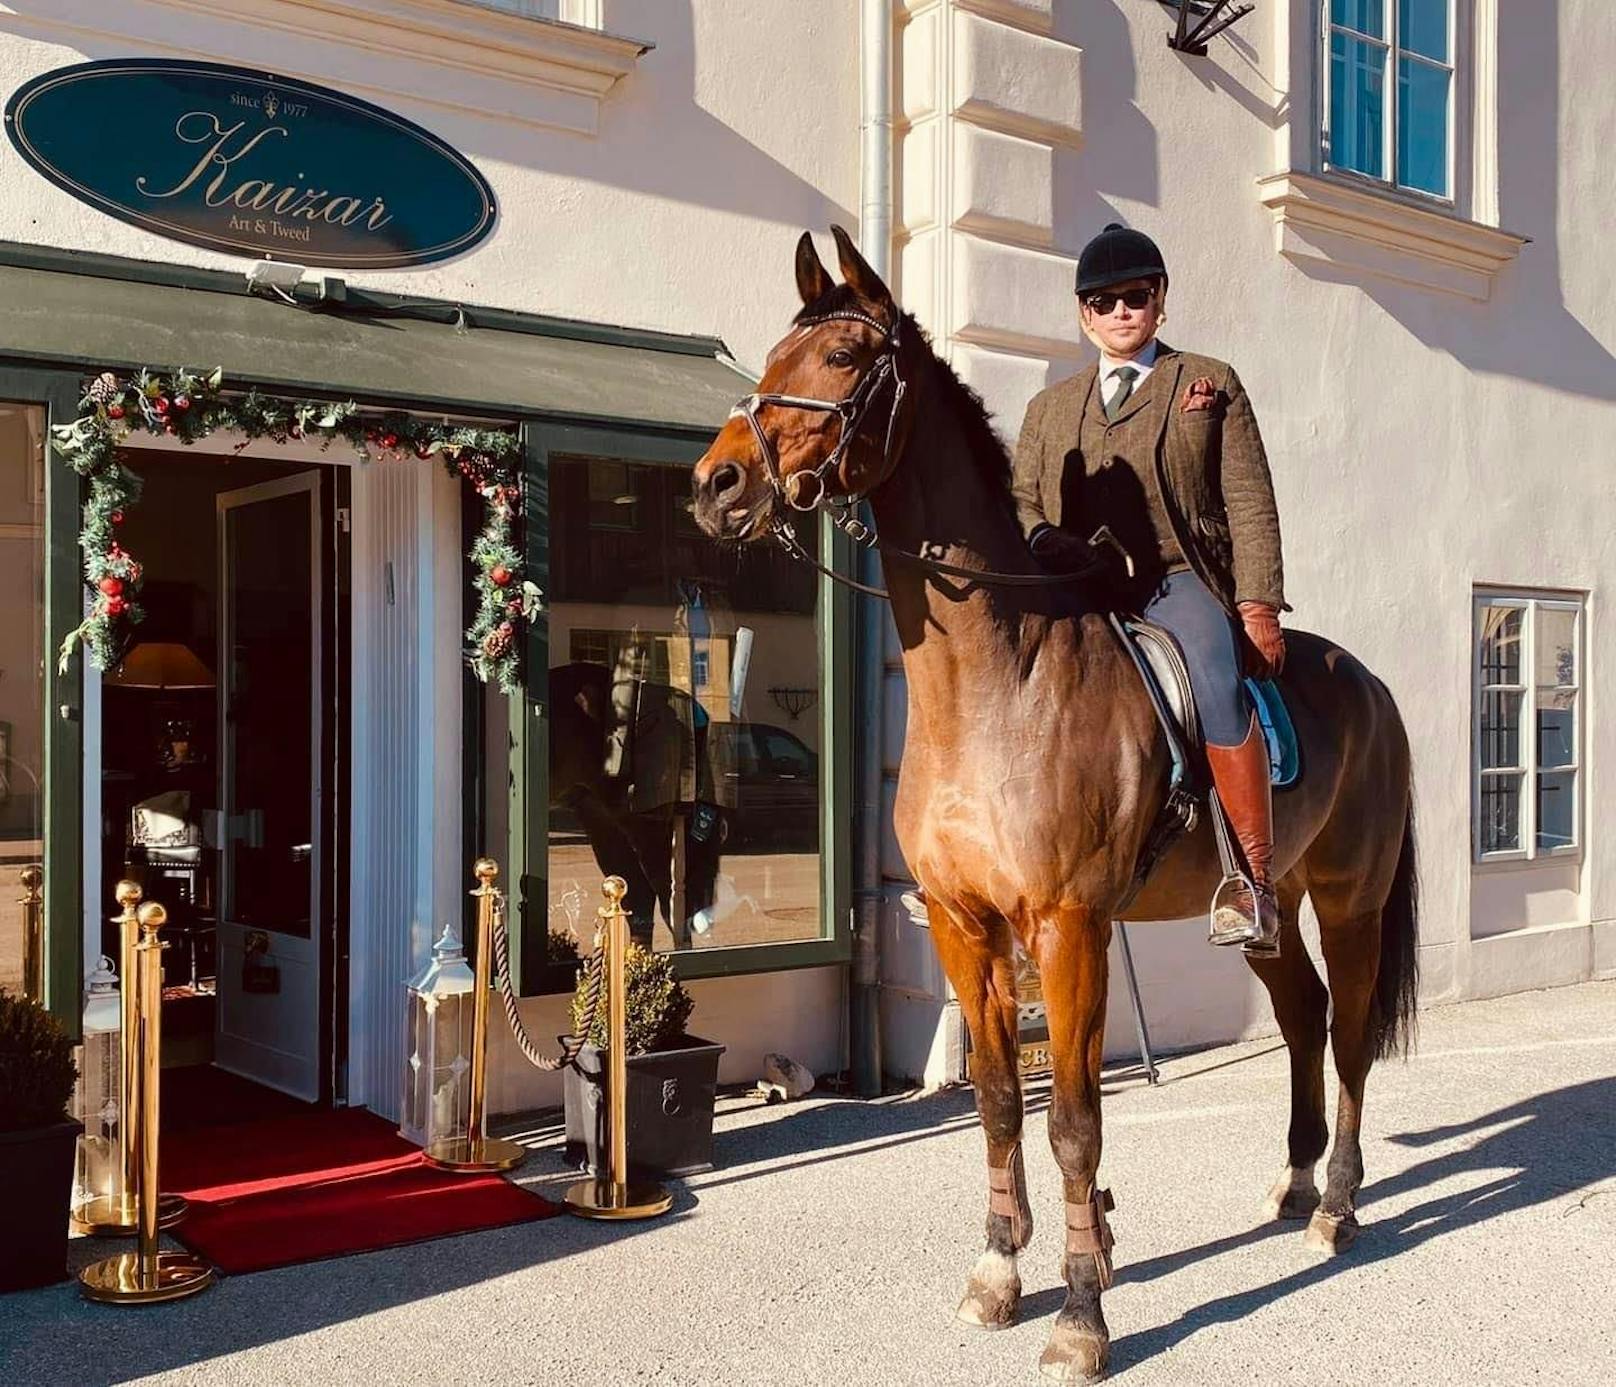 Werner Kaizar am Pferd vor seinem Shop: Es gibt sogar eine Anbindestation für Pferde.